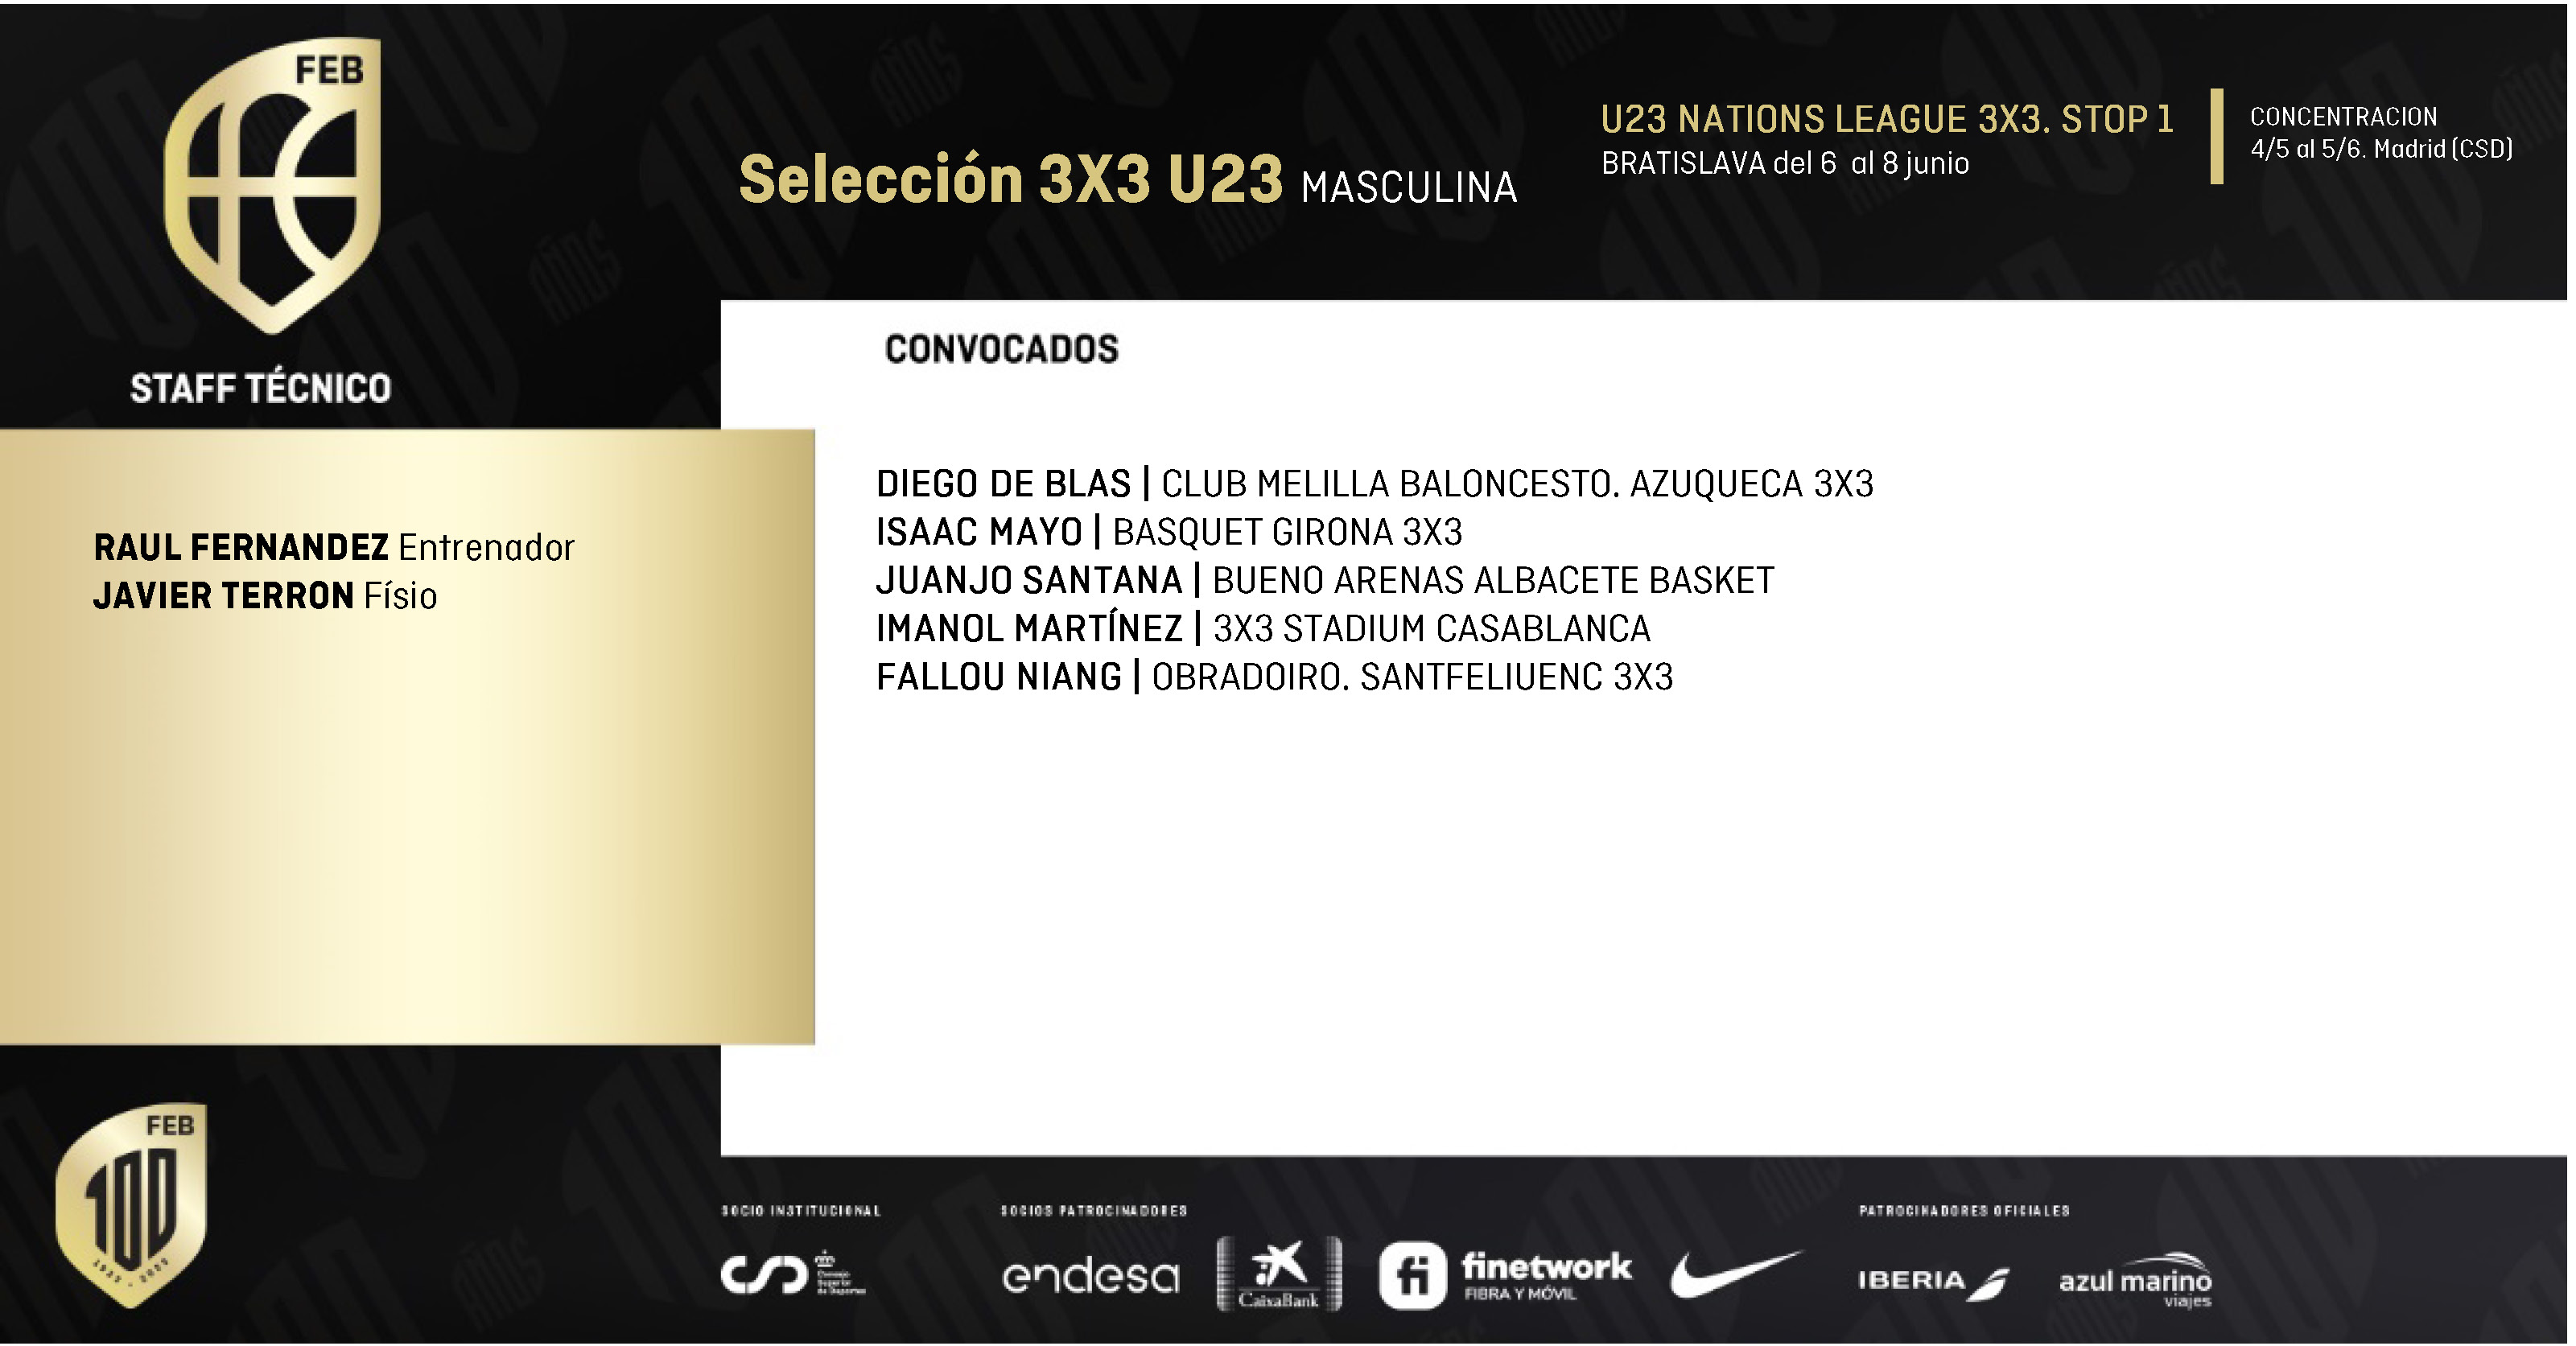 Convocatoria U23 Masculina 3x3. Nations League 3x3 Bratislava